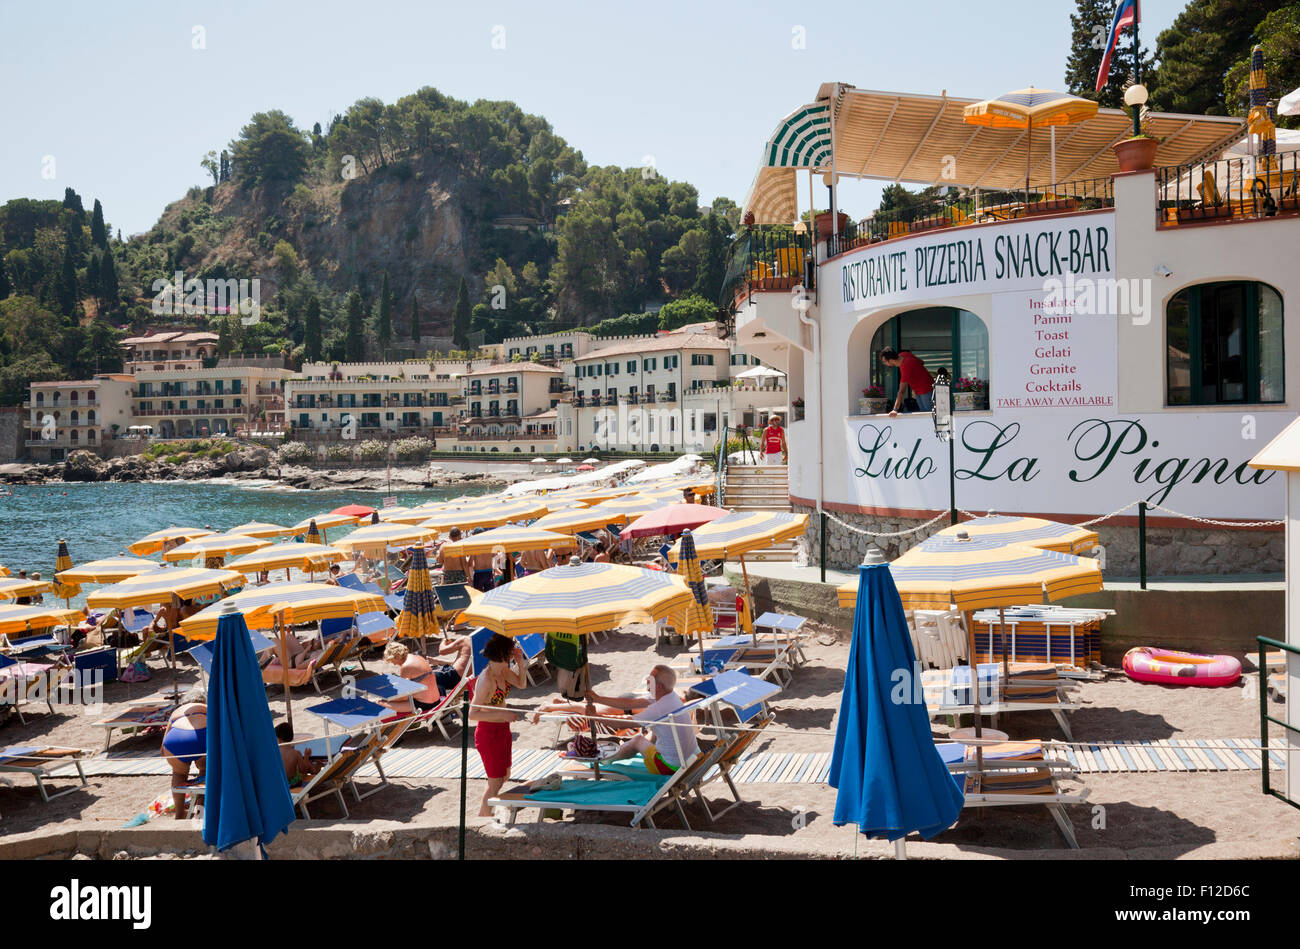 Lido La Pigna restaurant on Taormina beach, Sicily, Italy Stock Photo